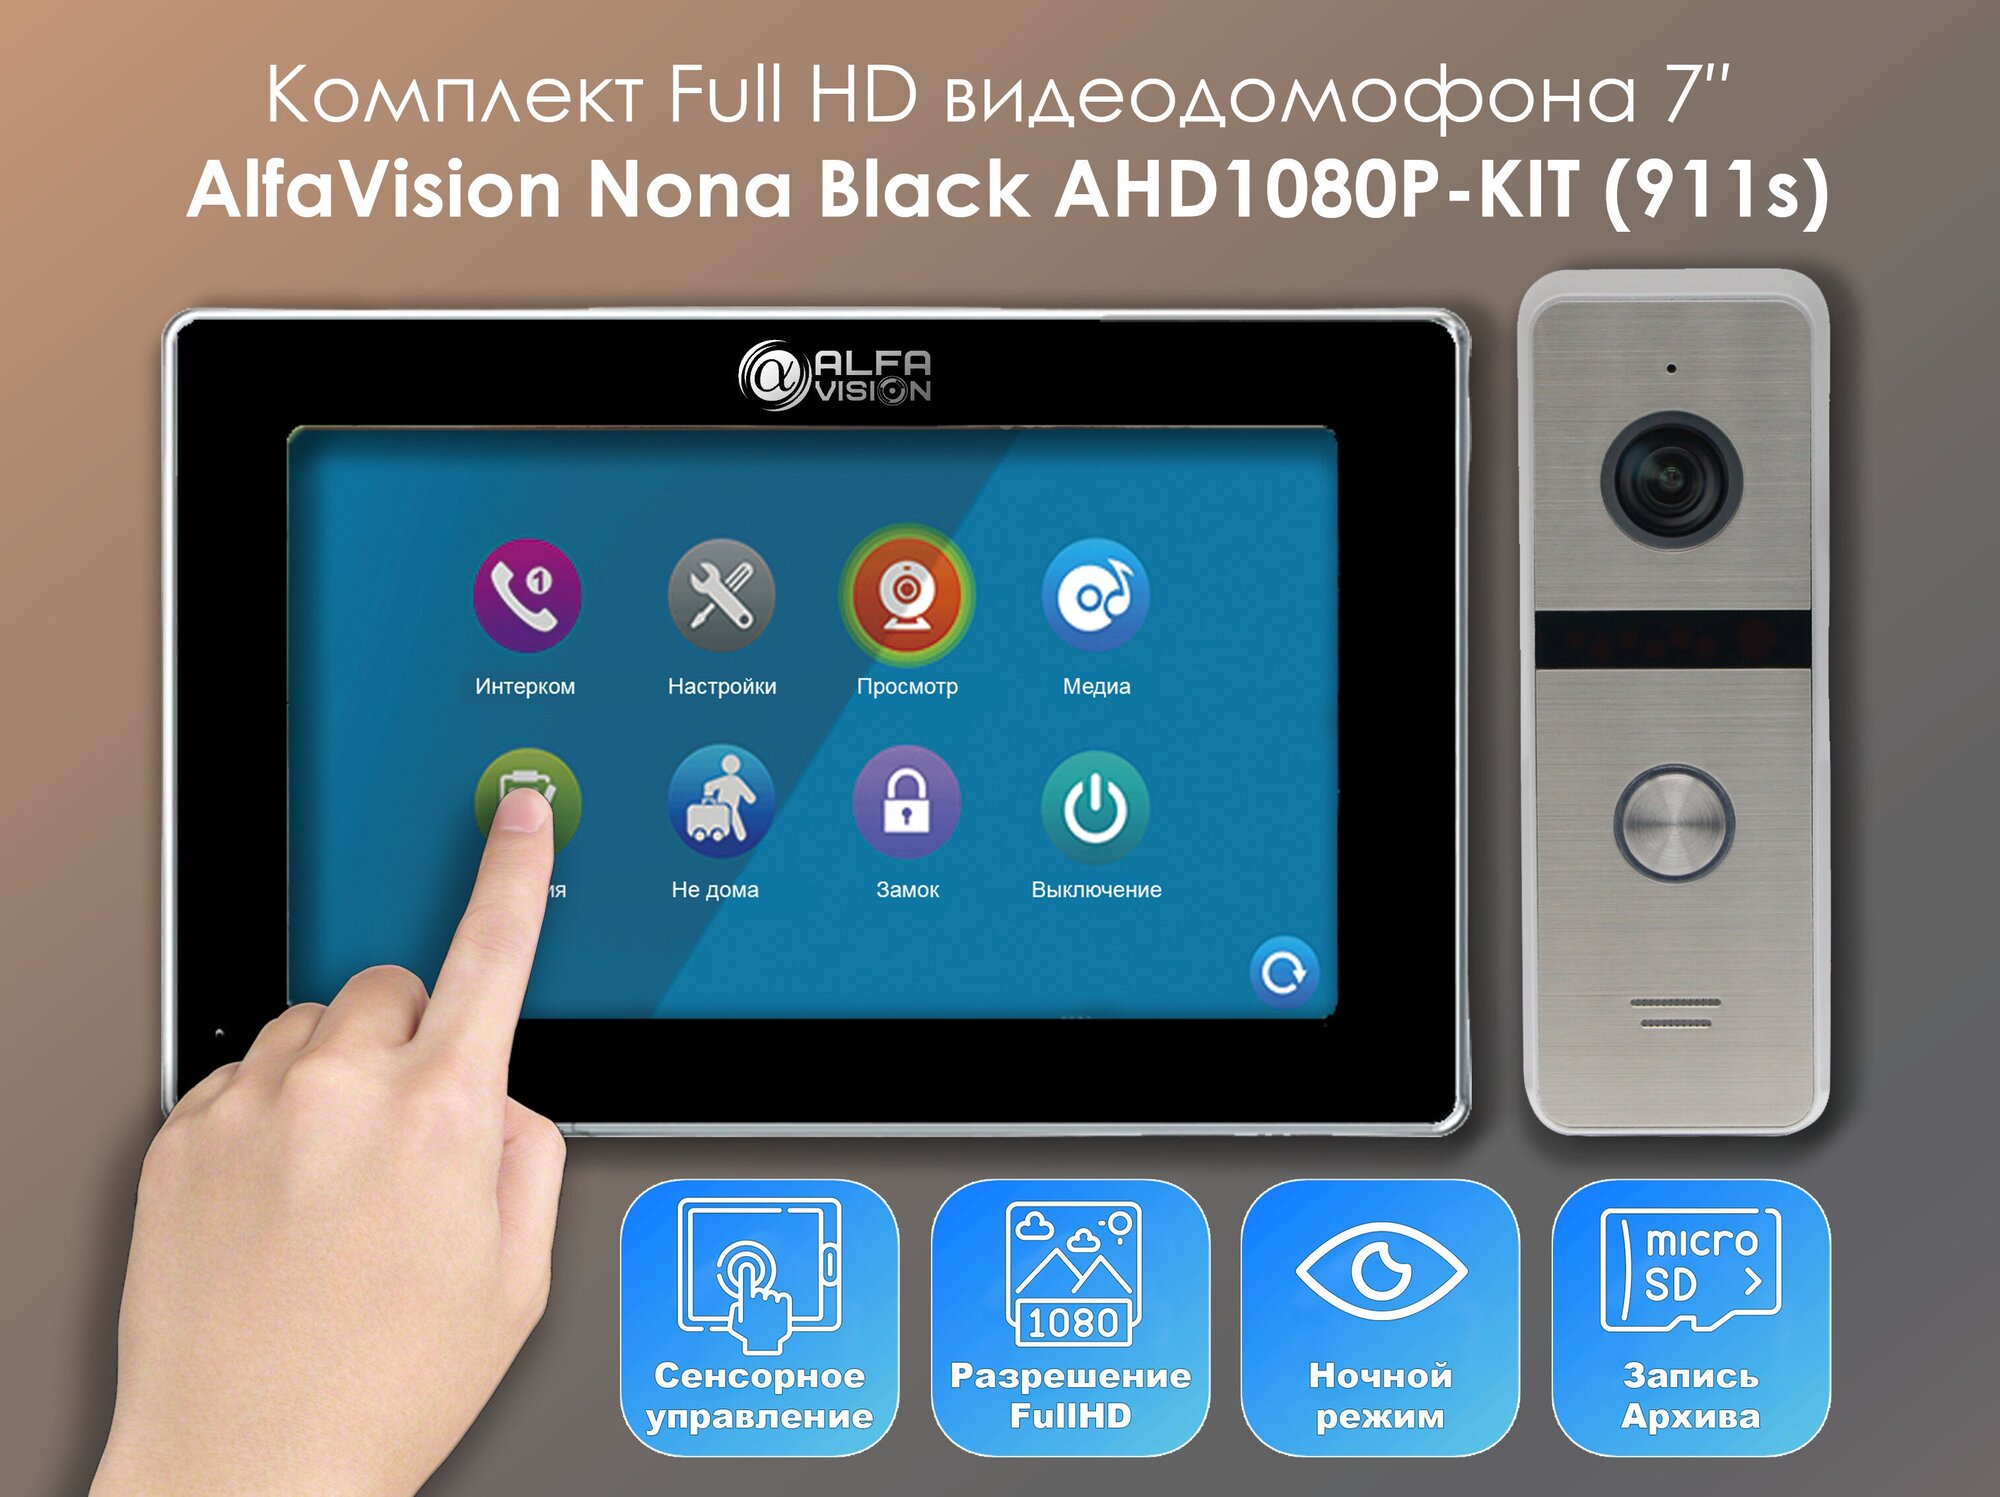 Комплект видеодомофона Nona Black-KIT+вызывная панель(911s) Full HD. Экран 7". Запись звонков и движения на SD-карту. Совместим с подъездным домофоном через модуль сопряжения.